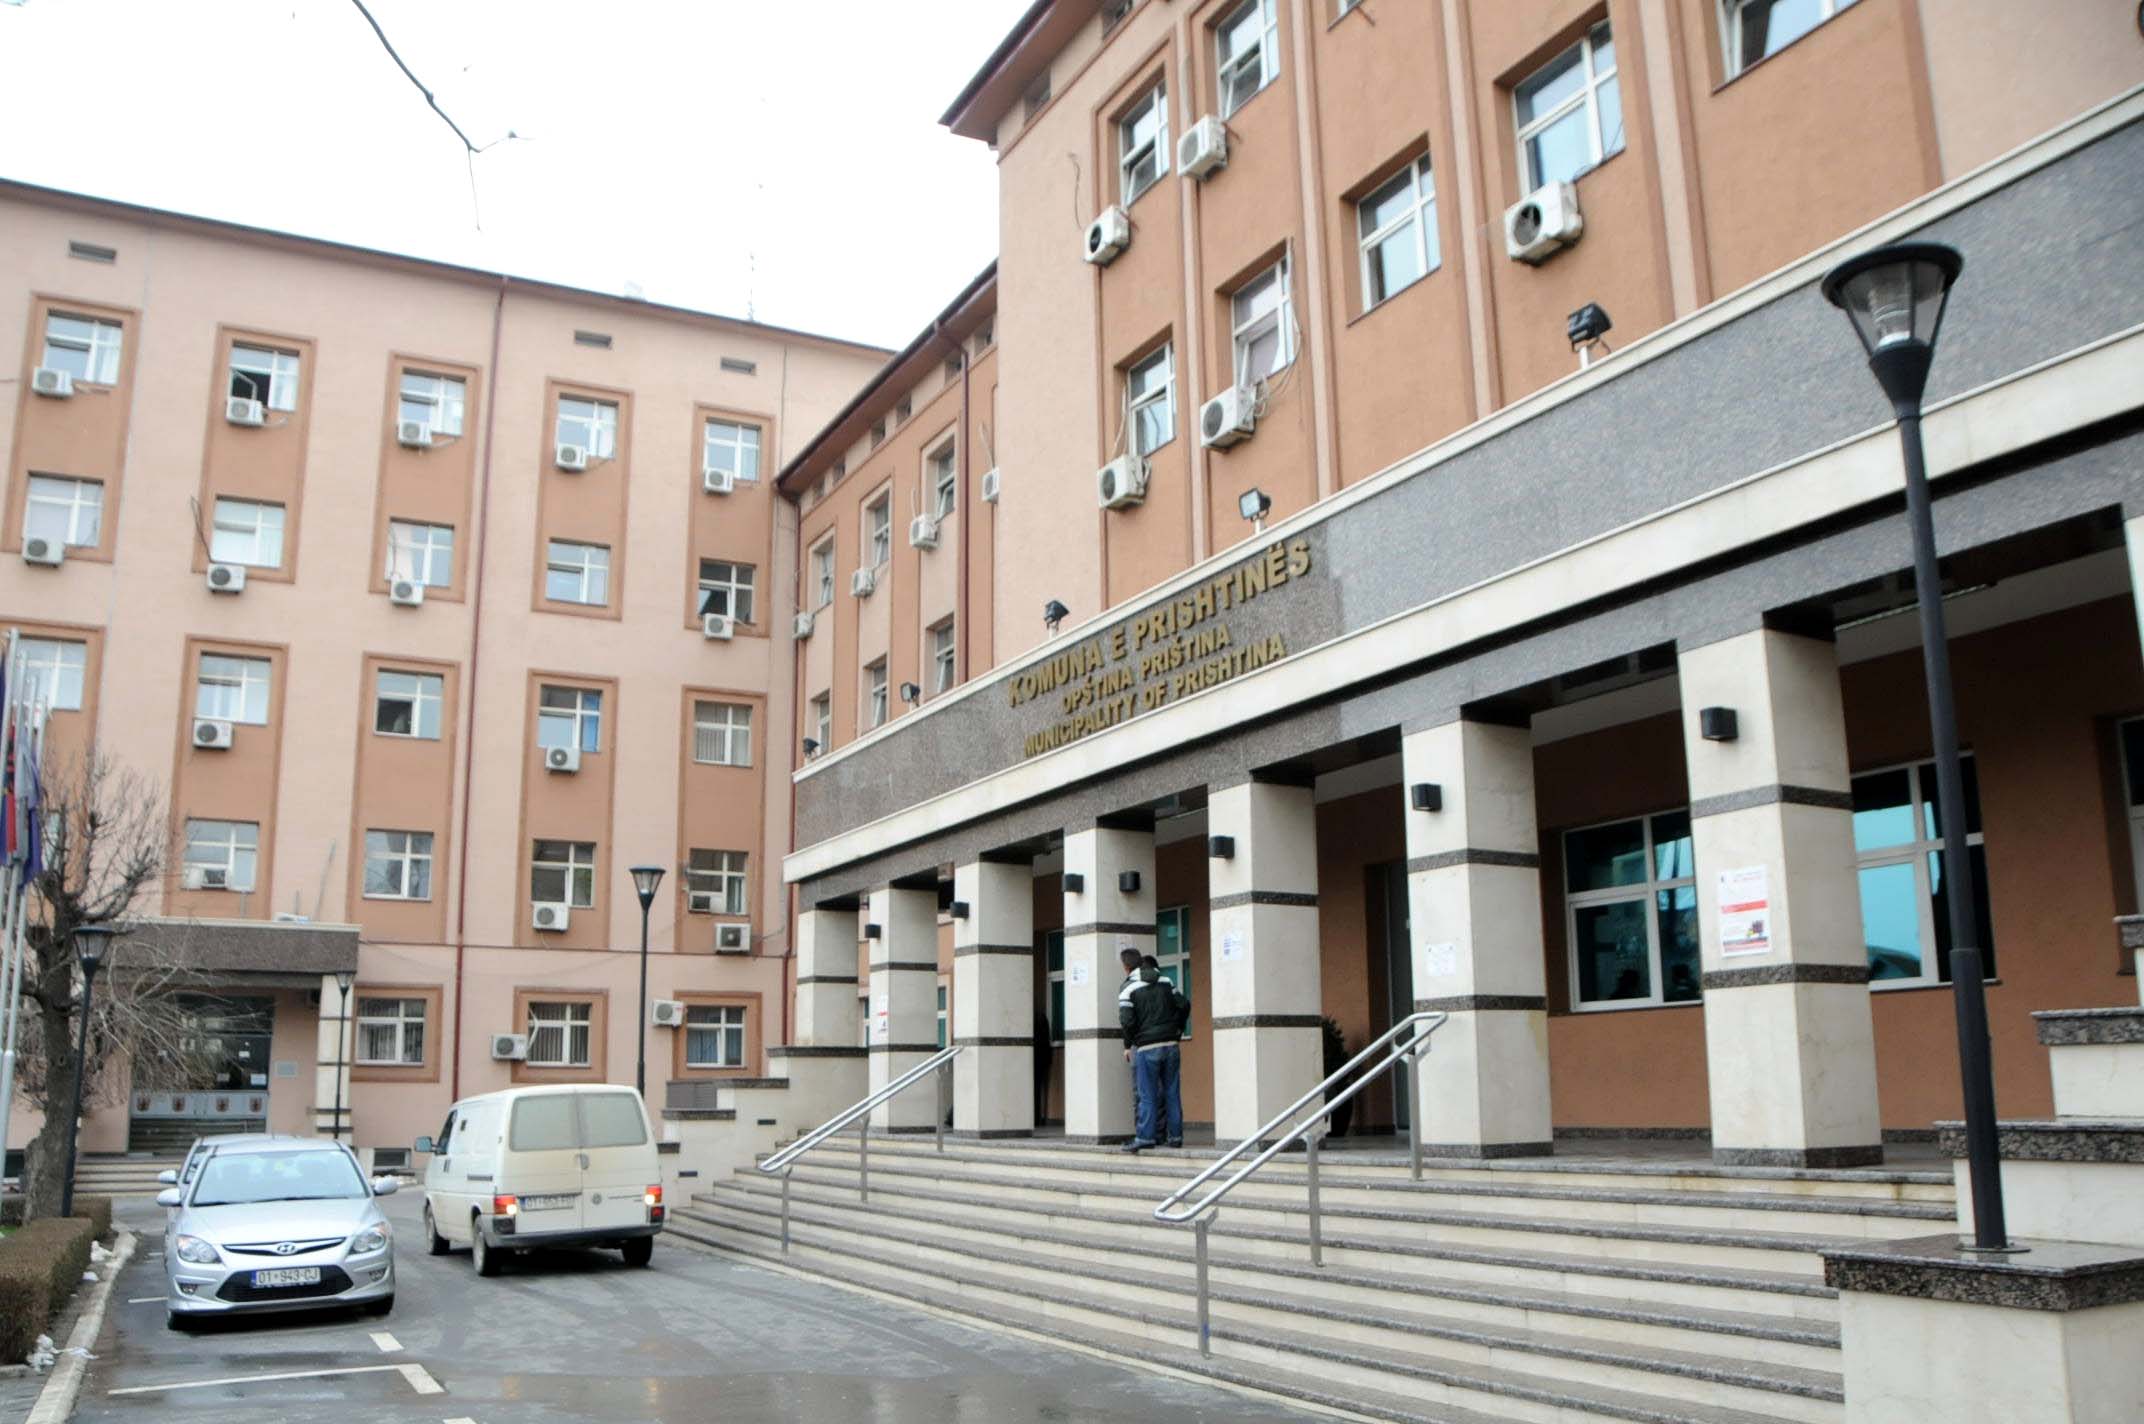 Në Prishtinë pritet të hiqet taksa prej 150 eurosh për transaksion të pronës së paluajtshme